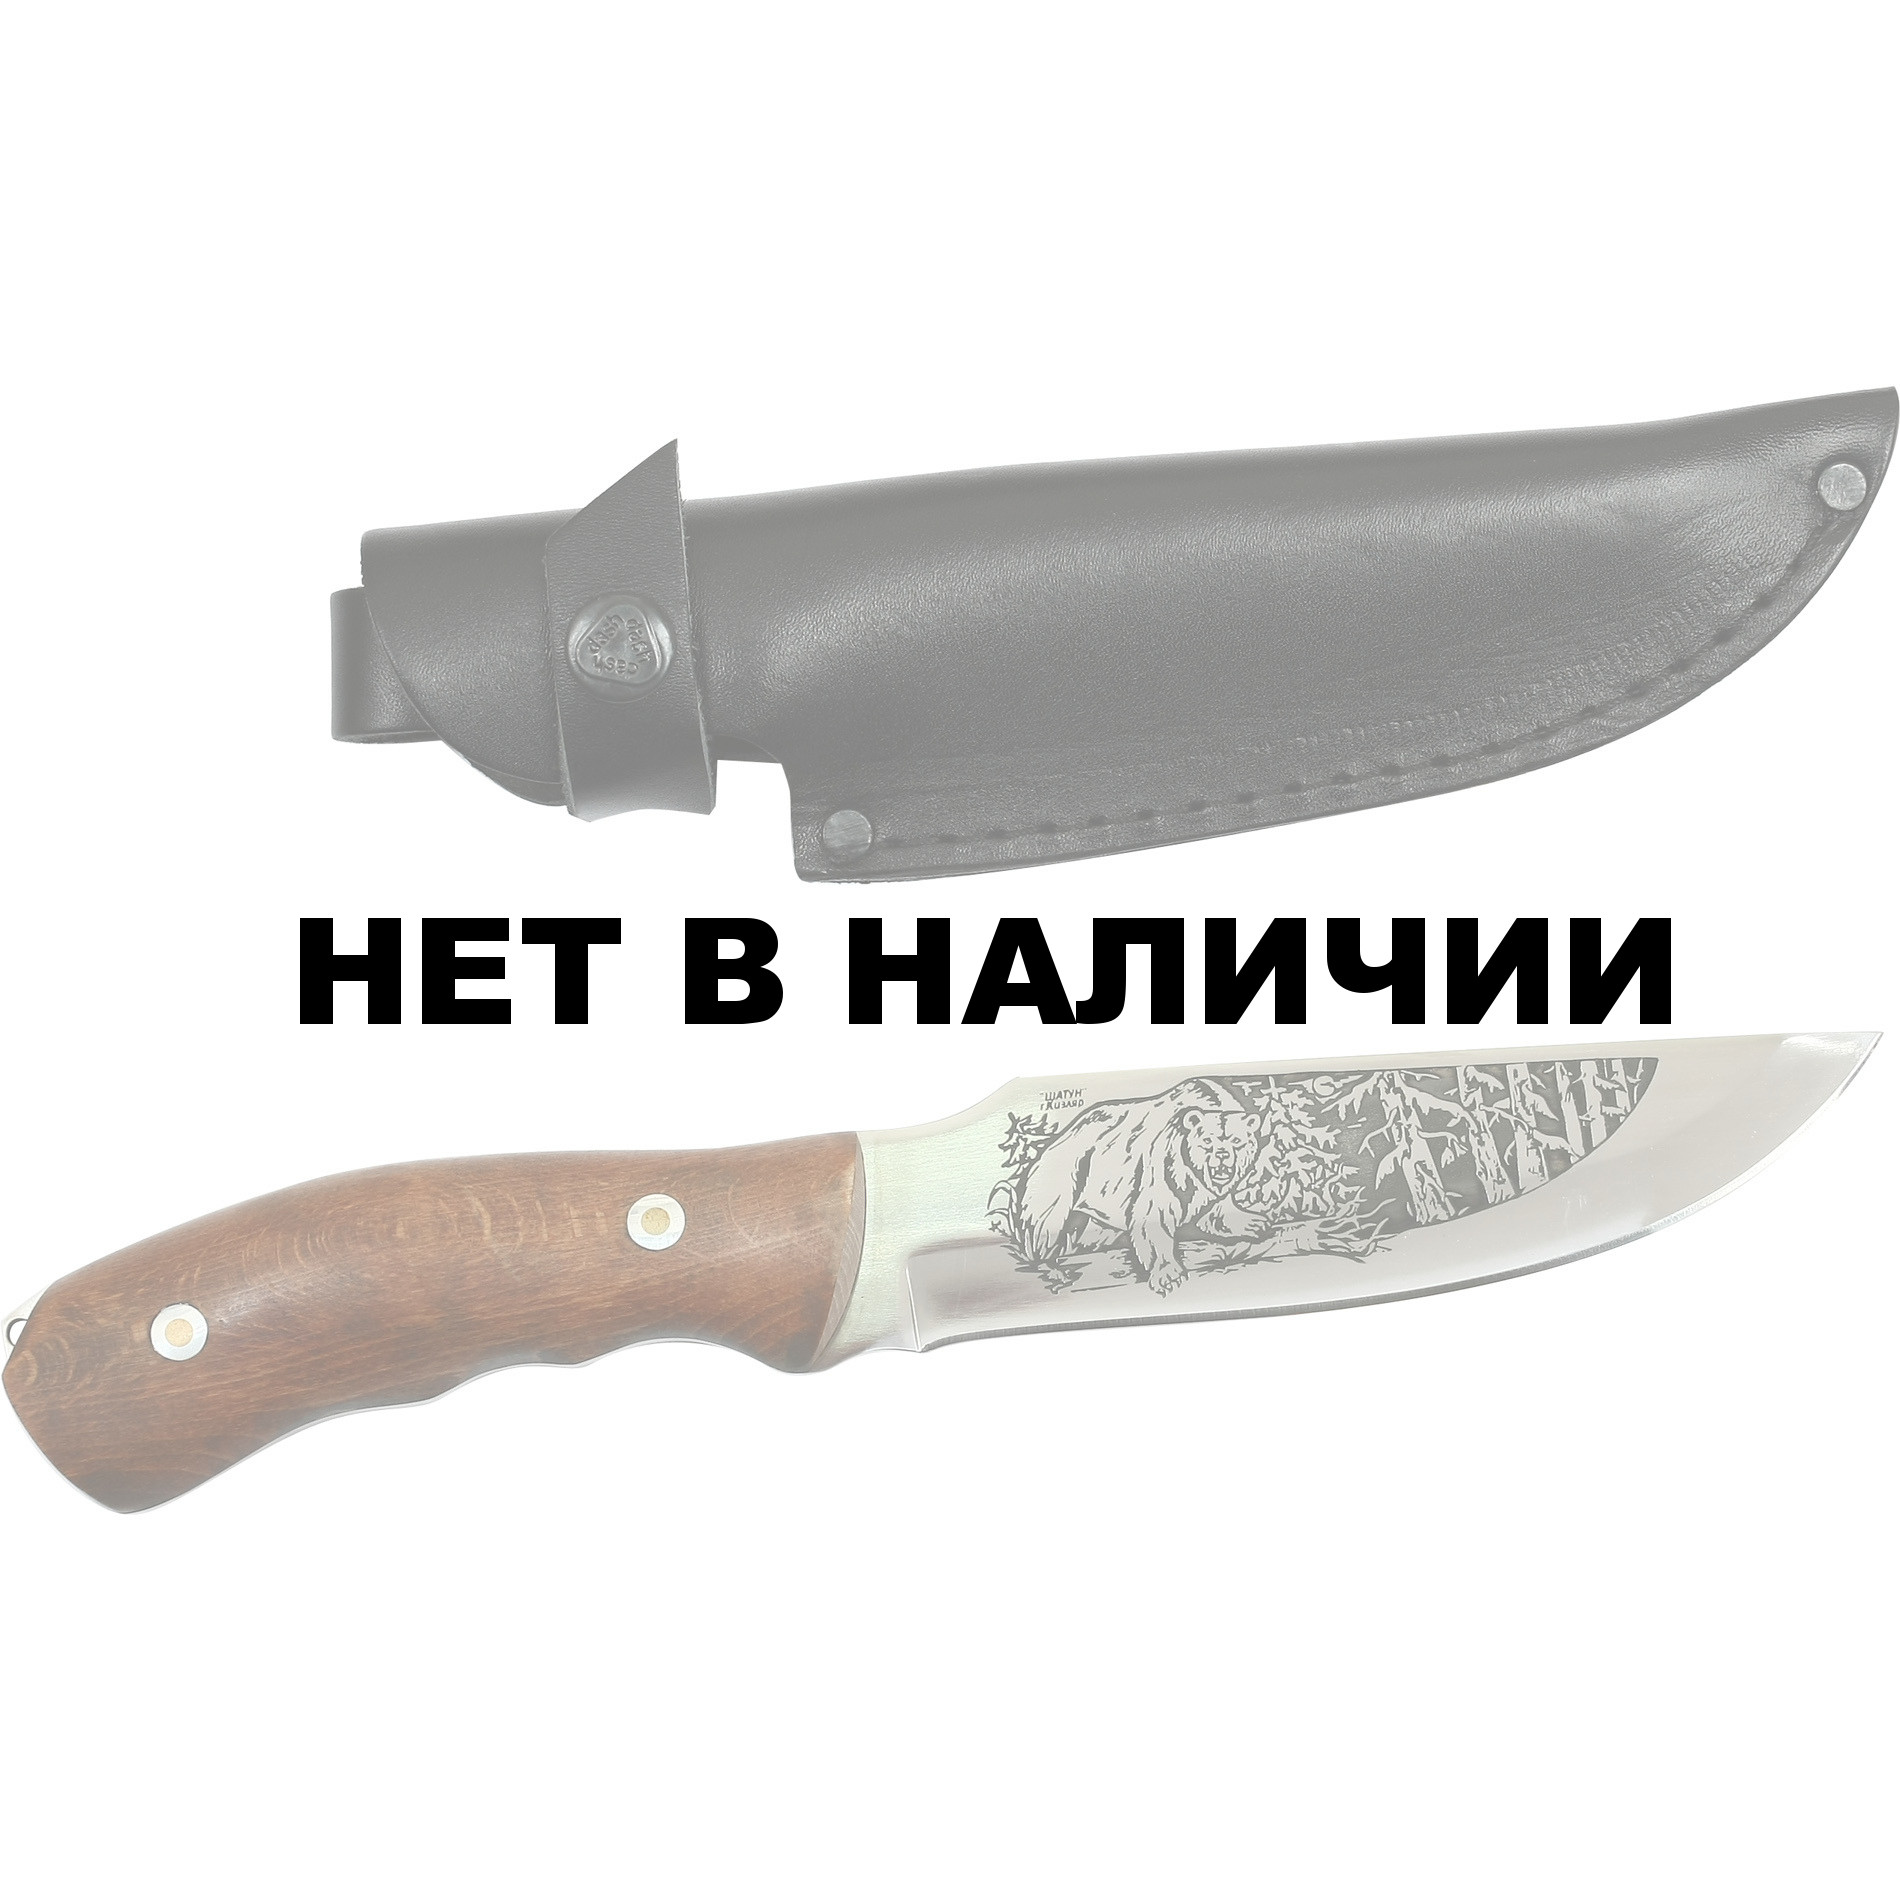 Кизлярские охотничьи ножи